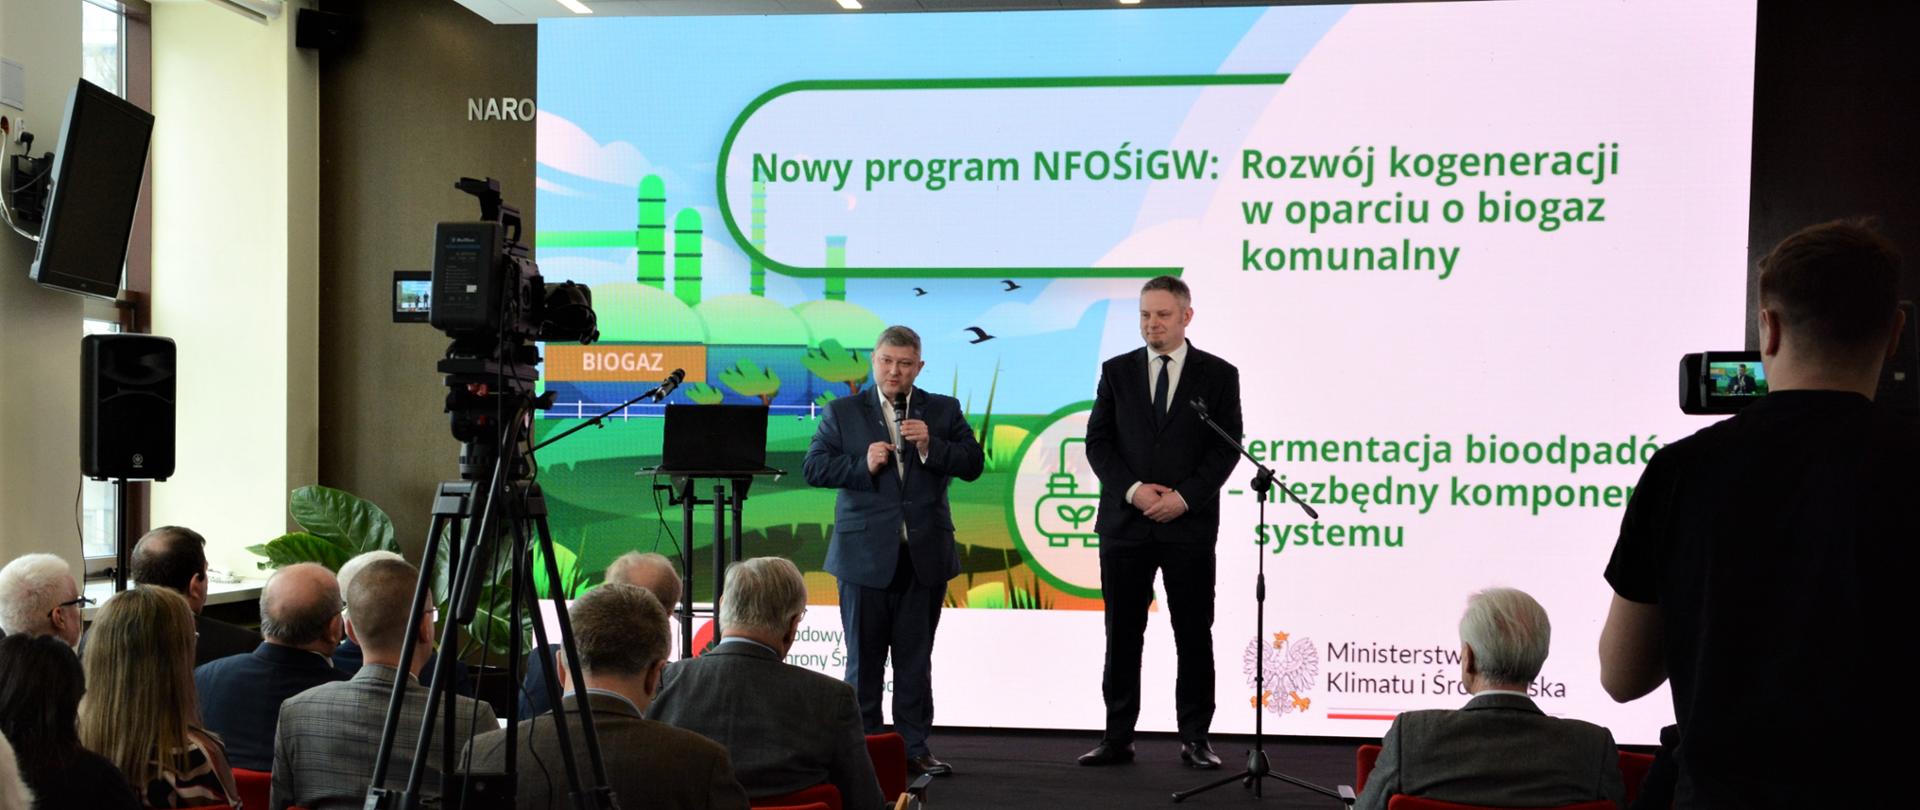 Zdjęcie z hybrydowej konferencji NFOŚiGW poświęconej instalacjom fermentacji bioodpadów i uruchomieniu nowego programu finansującego inwestycje - Rozwój kogeneracji w oparciu o biogaz komunalny w siedzibie Funduszu